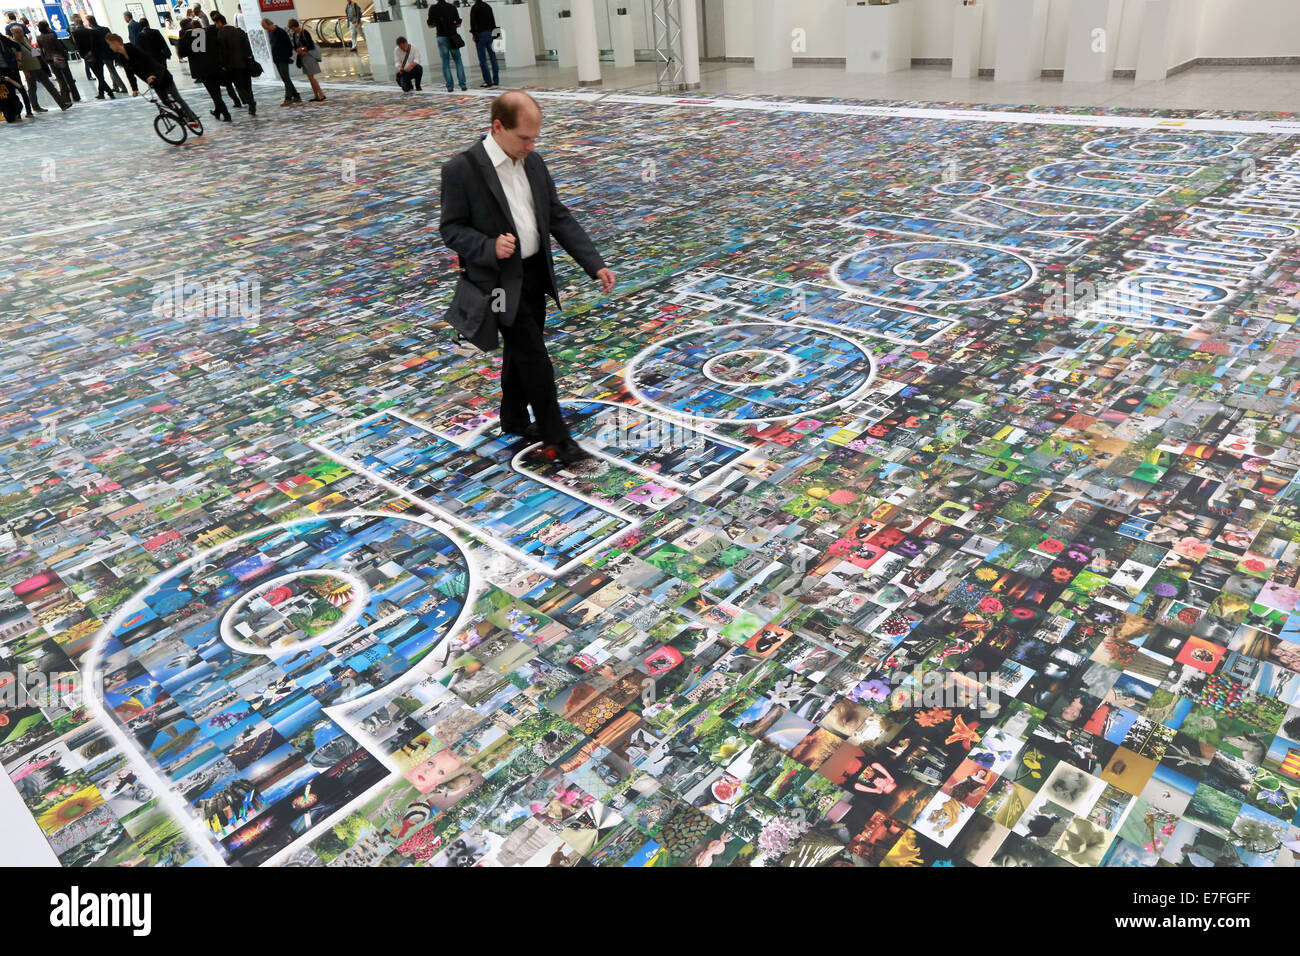 Persone che camminano su un pavimento coperto con migliaia di fotografie, Photokina 2014, Colonia, Germania Foto Stock